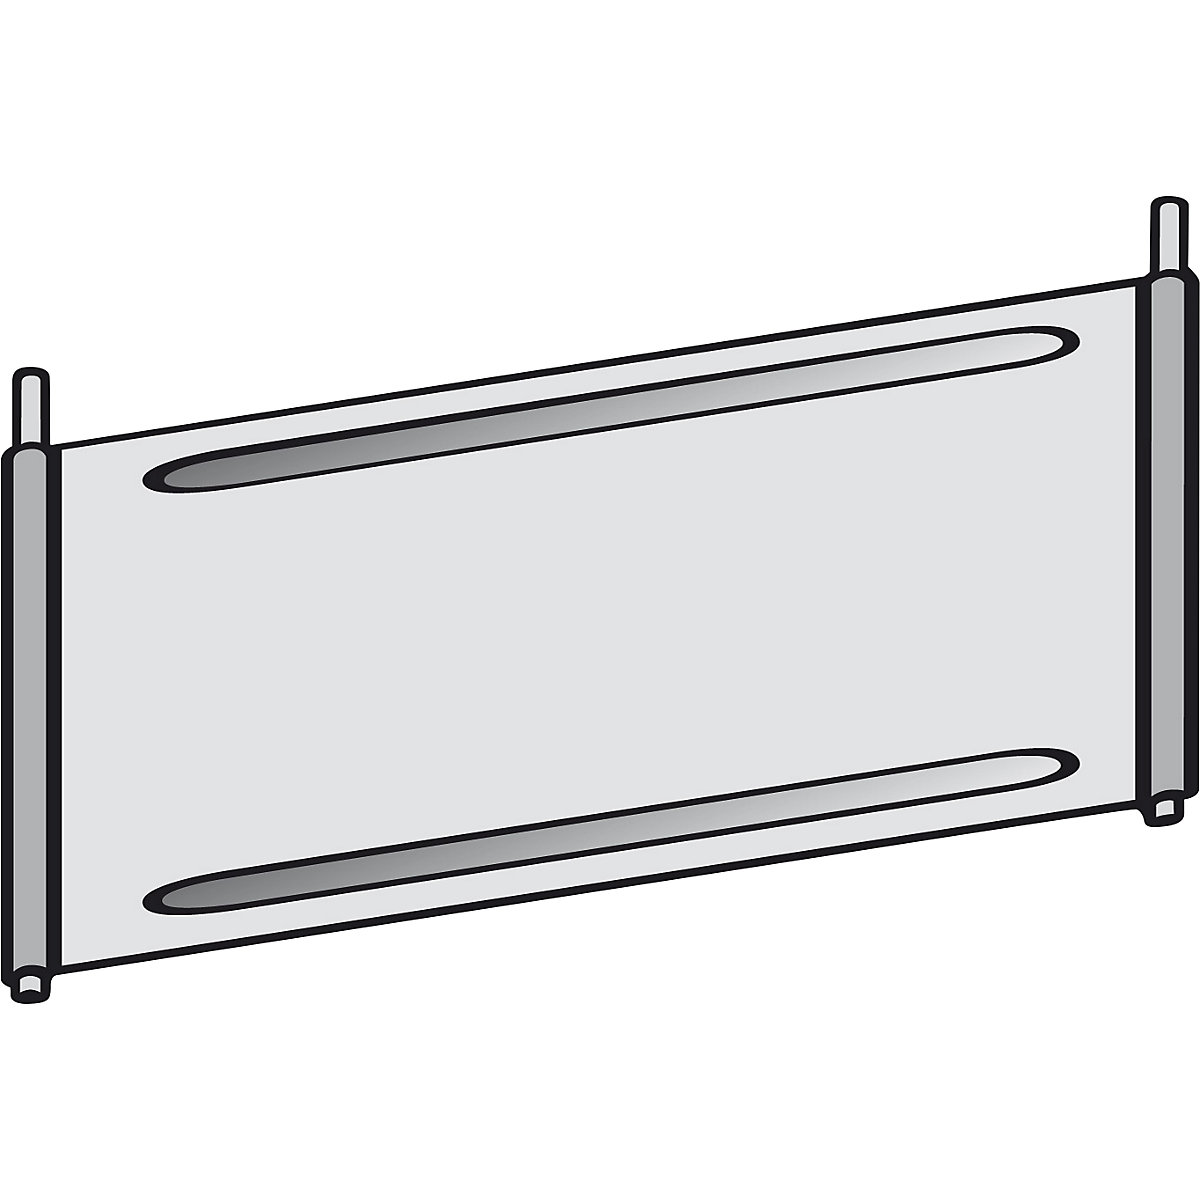 Shelf partition for compartment shelf unit - hofe